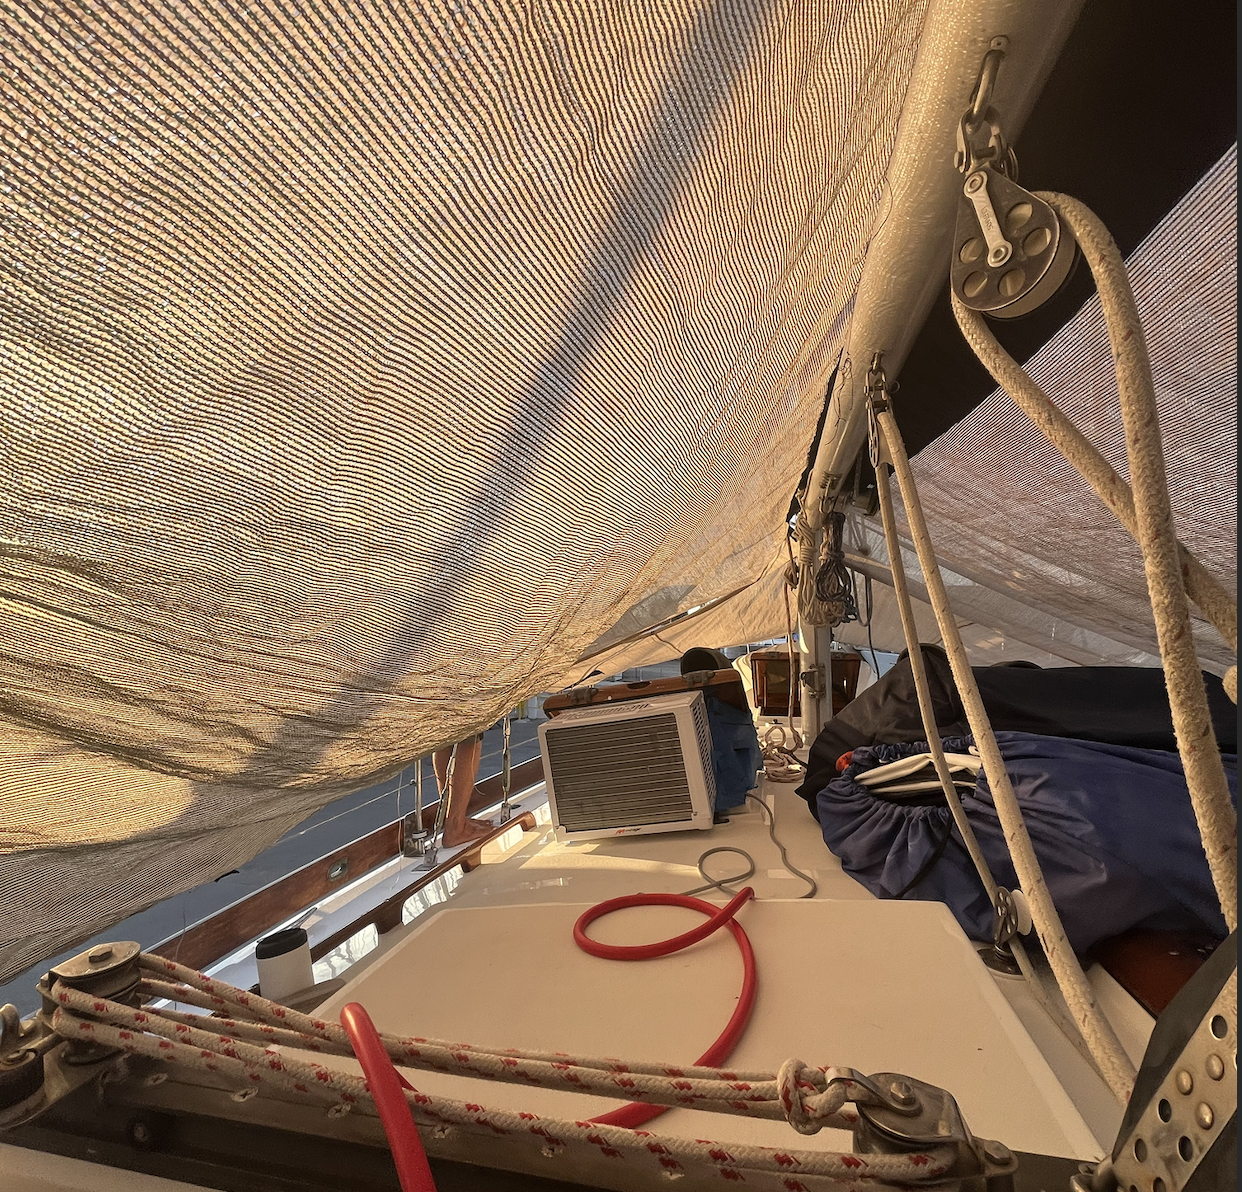 Sunshades on a sailboat